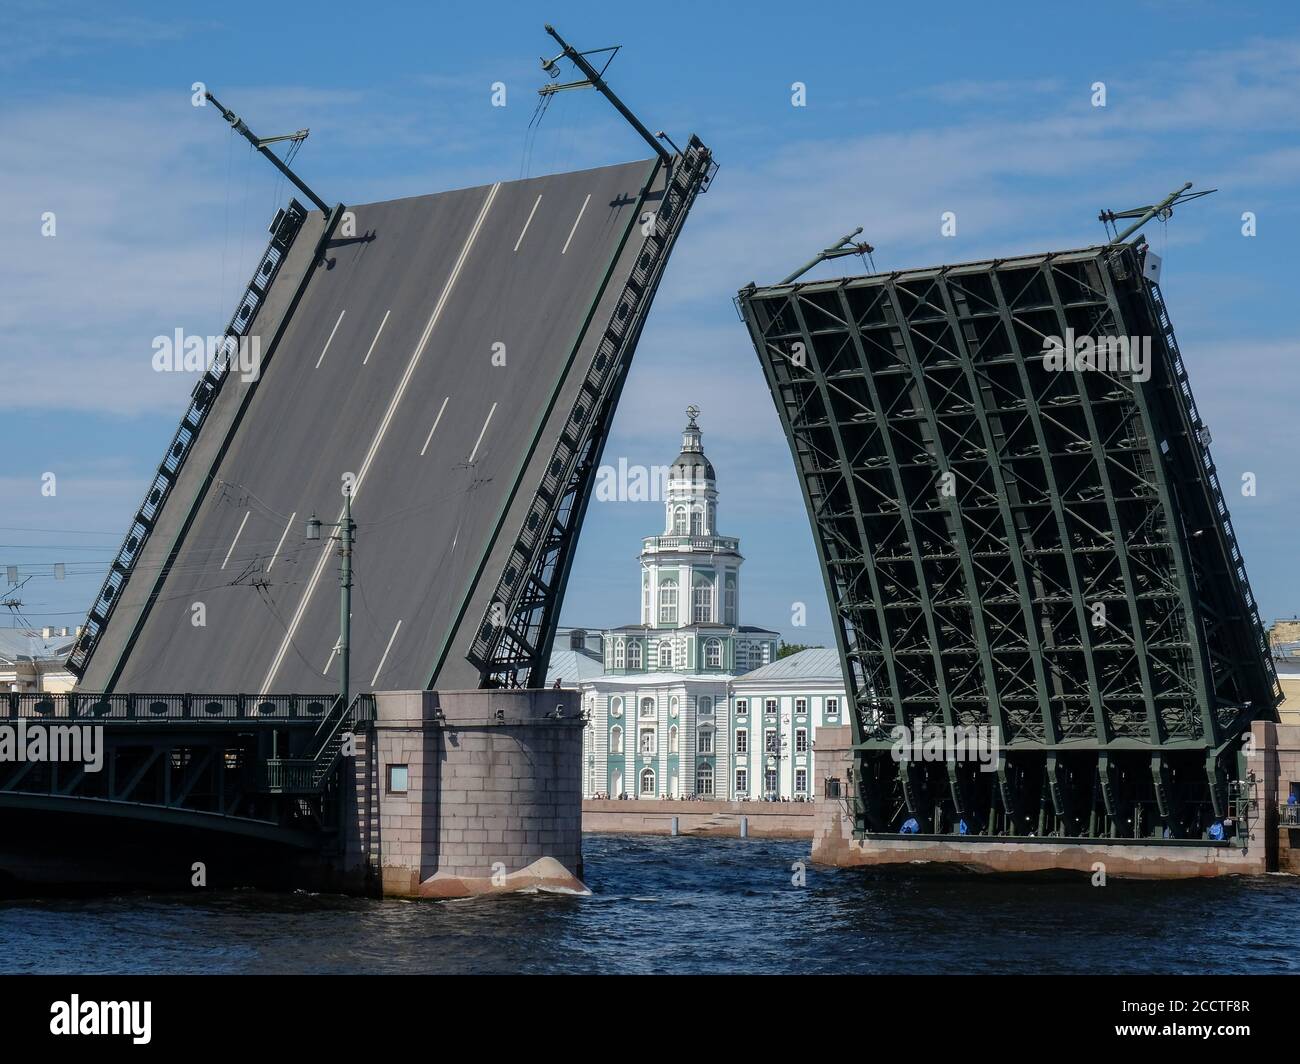 Zugbrücke in St. Petersburg, Russland. Das Kunstkameragebäude zwischen den Öffnungen der Brücke. Stockfoto